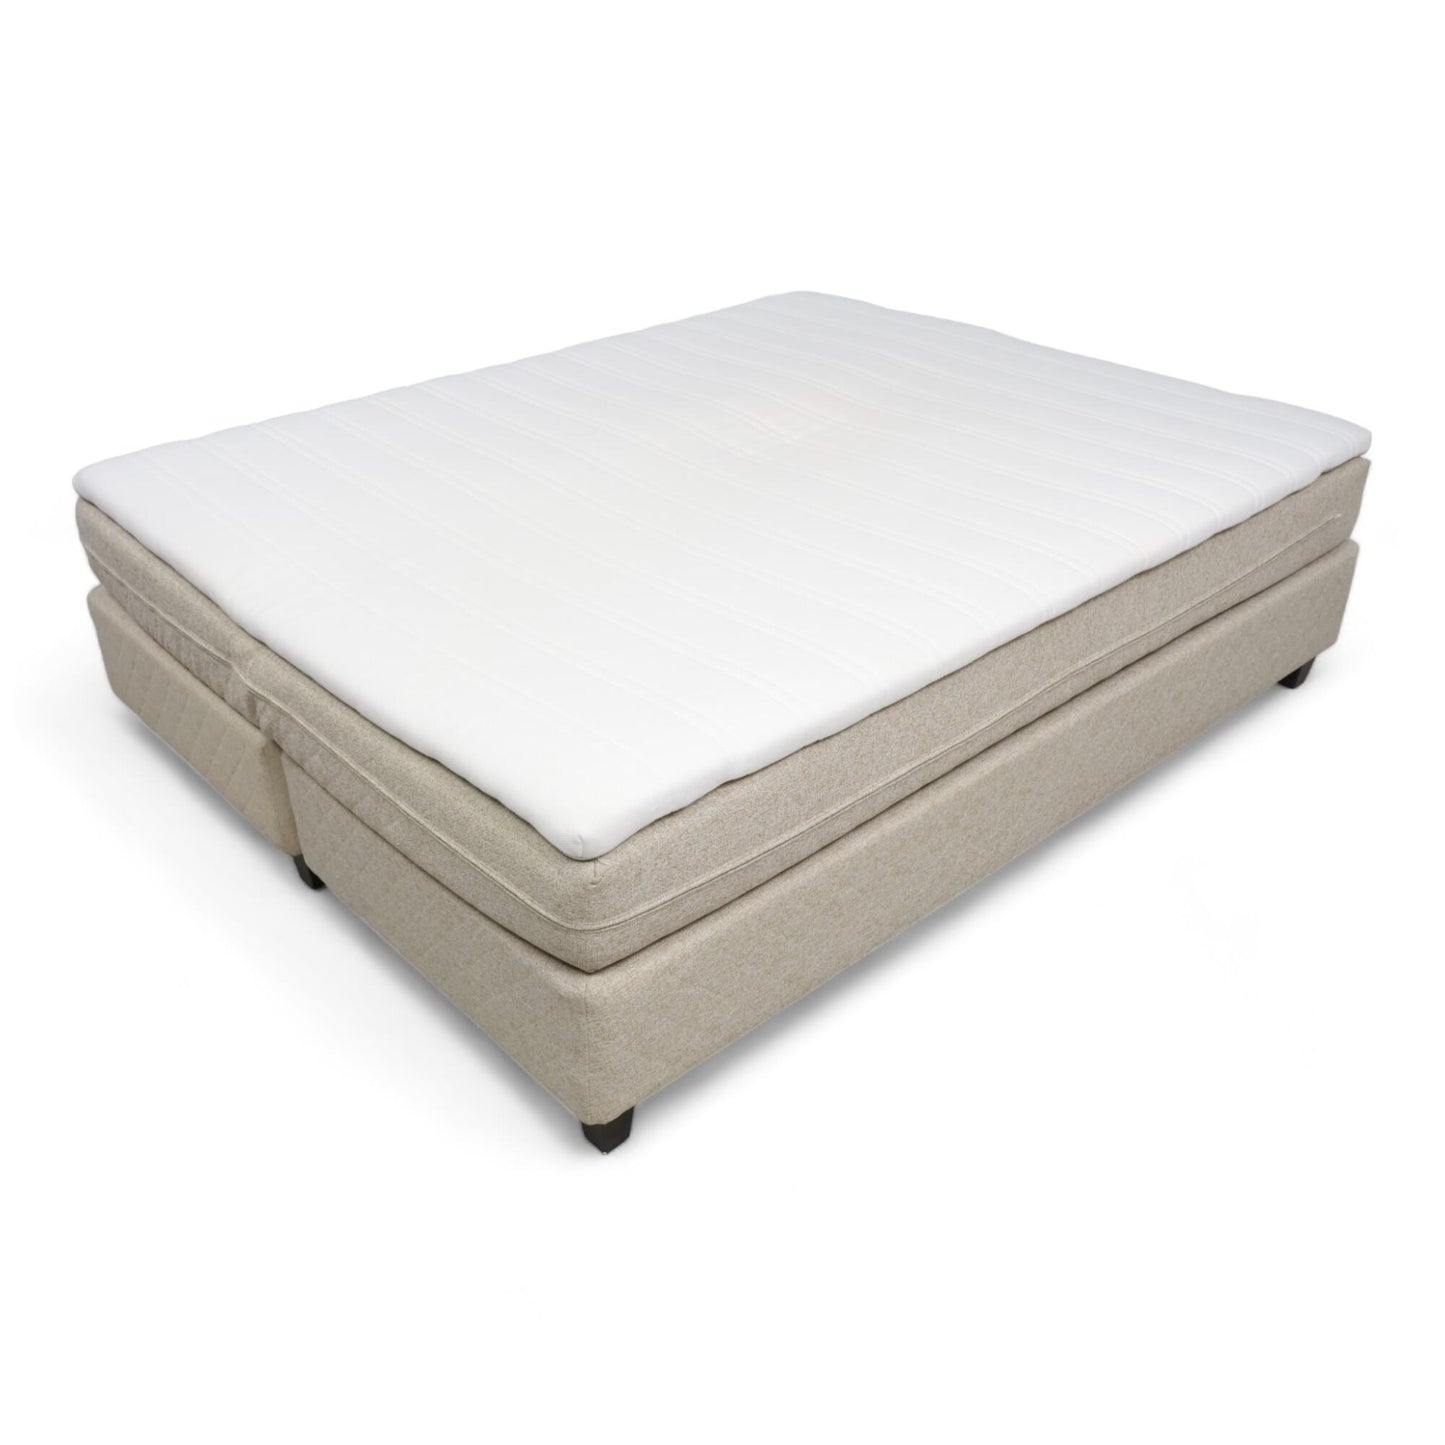 Nyrenset | Beige Jensen Pulse seng med Ikea Tuddal overmadrass, 160x200cm